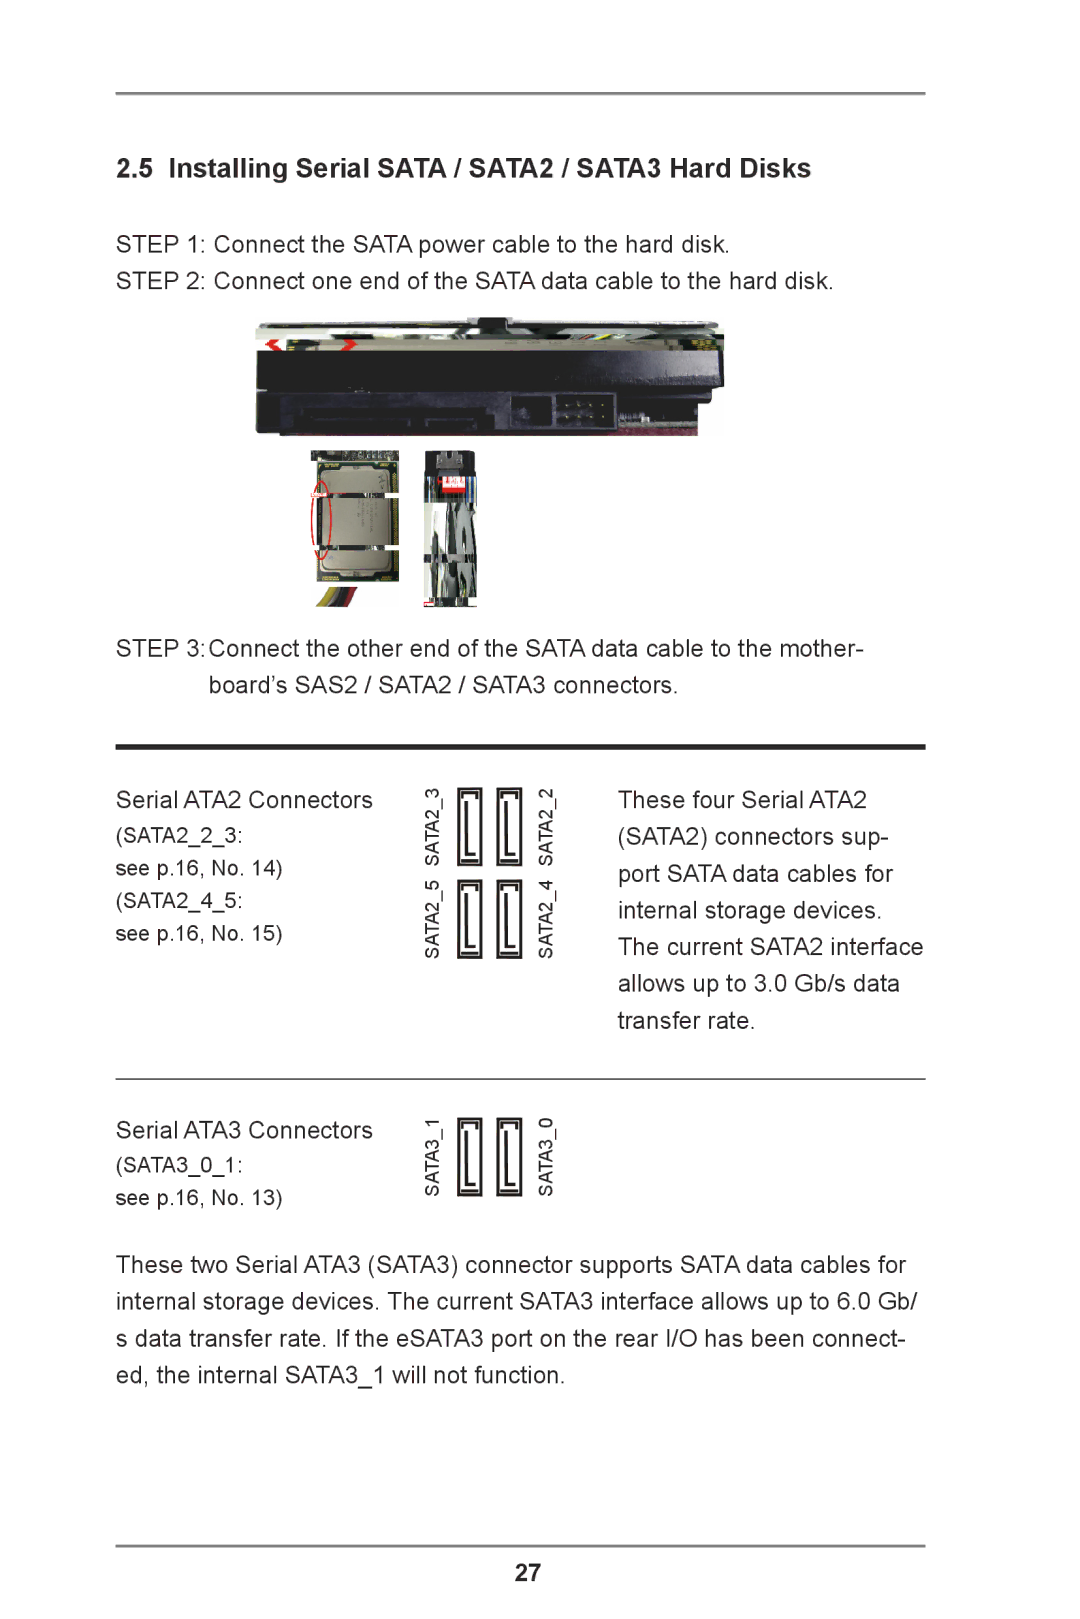 ASRock Z77 Extreme11 manual Installing Serial Sata / SATA2 / SATA3 Hard Disks 